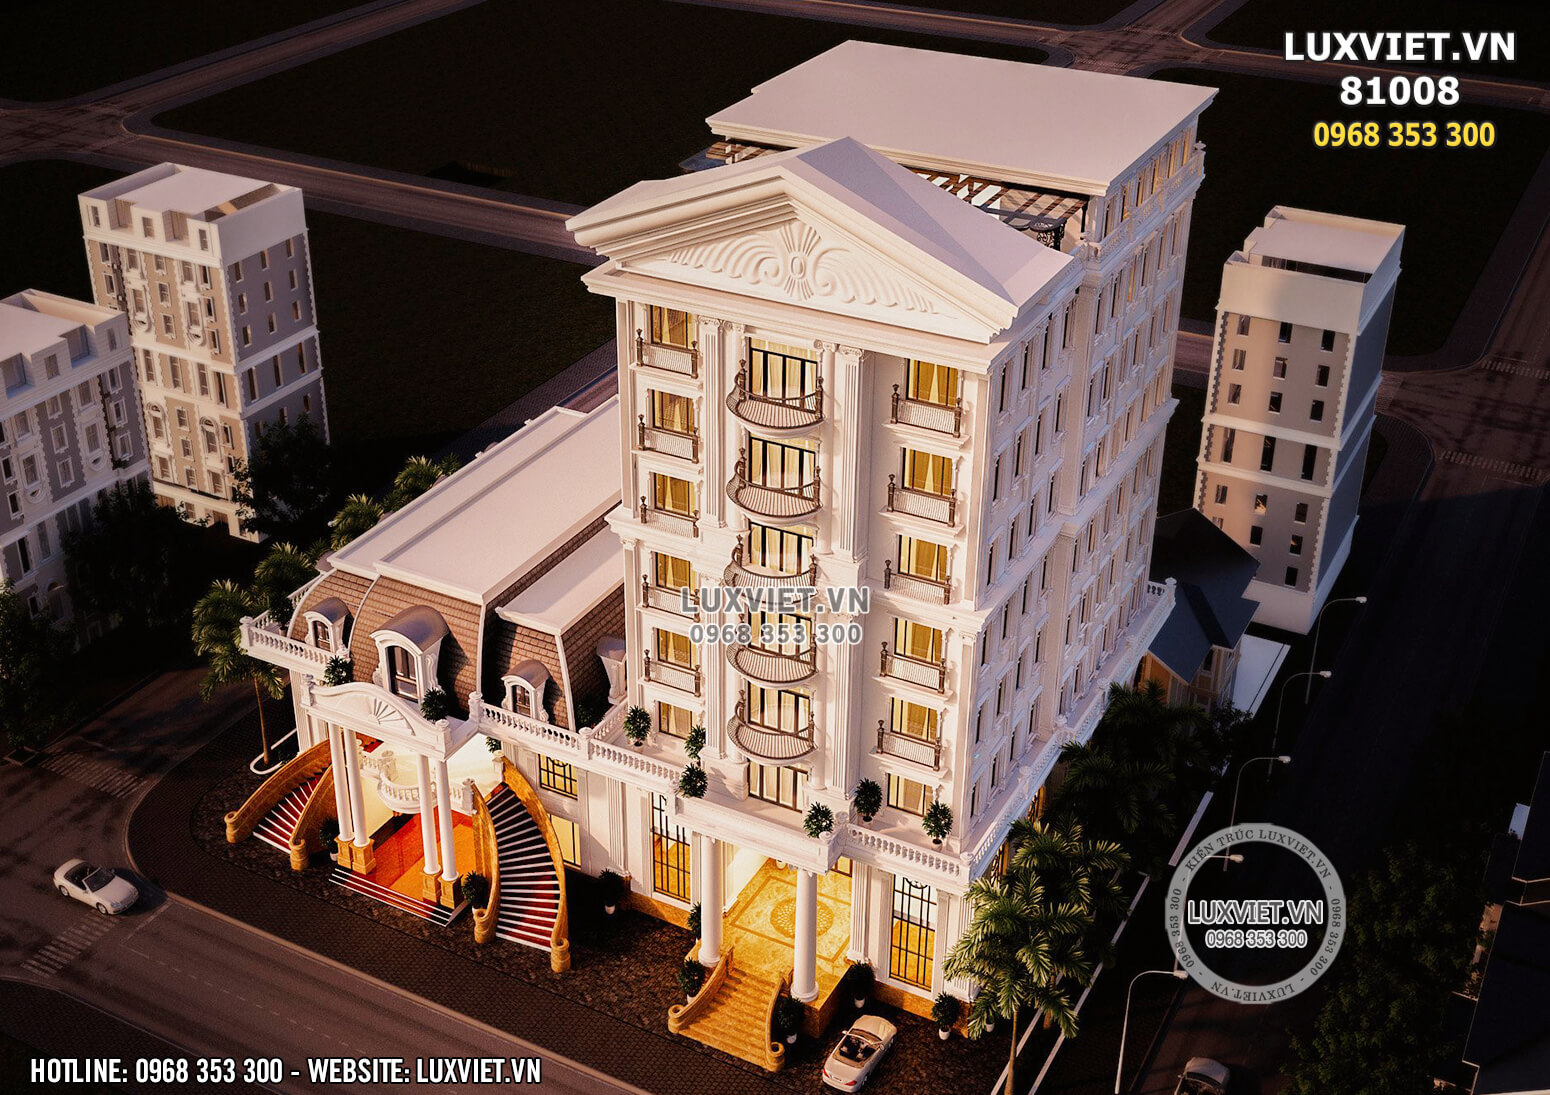 Hình ảnh: Tổng thể kiến trúc của mẫu khách sạn kết hợp trung tâm tổ chức sự kiện được thiết kế theo lối kiến trúc tân cổ điển